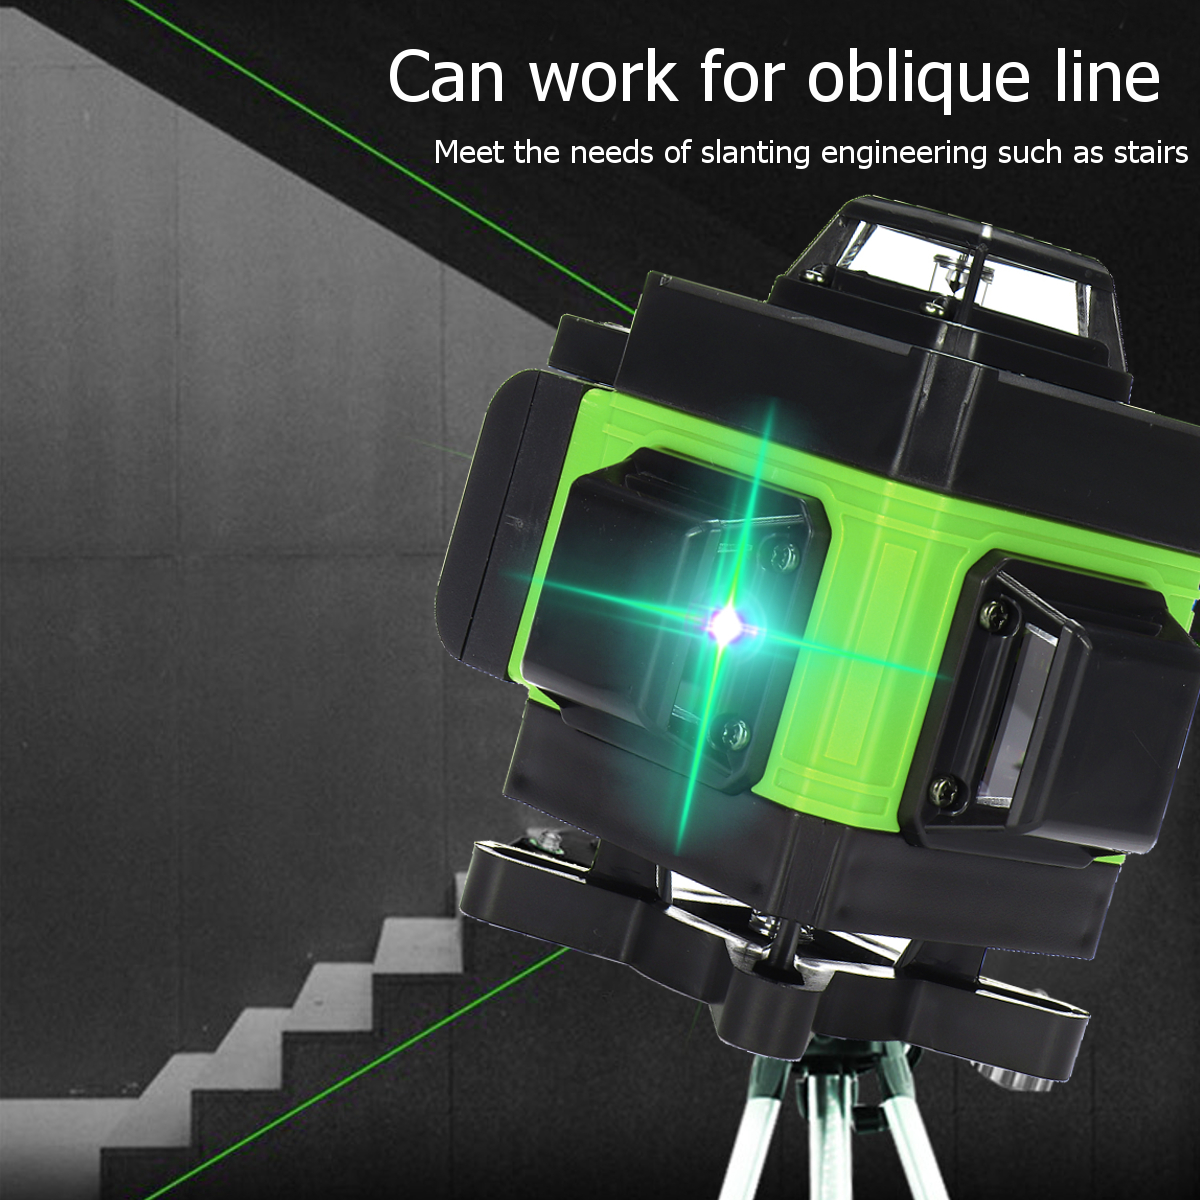 LED-Display-3D-360deg-16-Line-Green-Light-Laser-Level-Cross-Self-Leveling-Measure-Tool-1700669-12